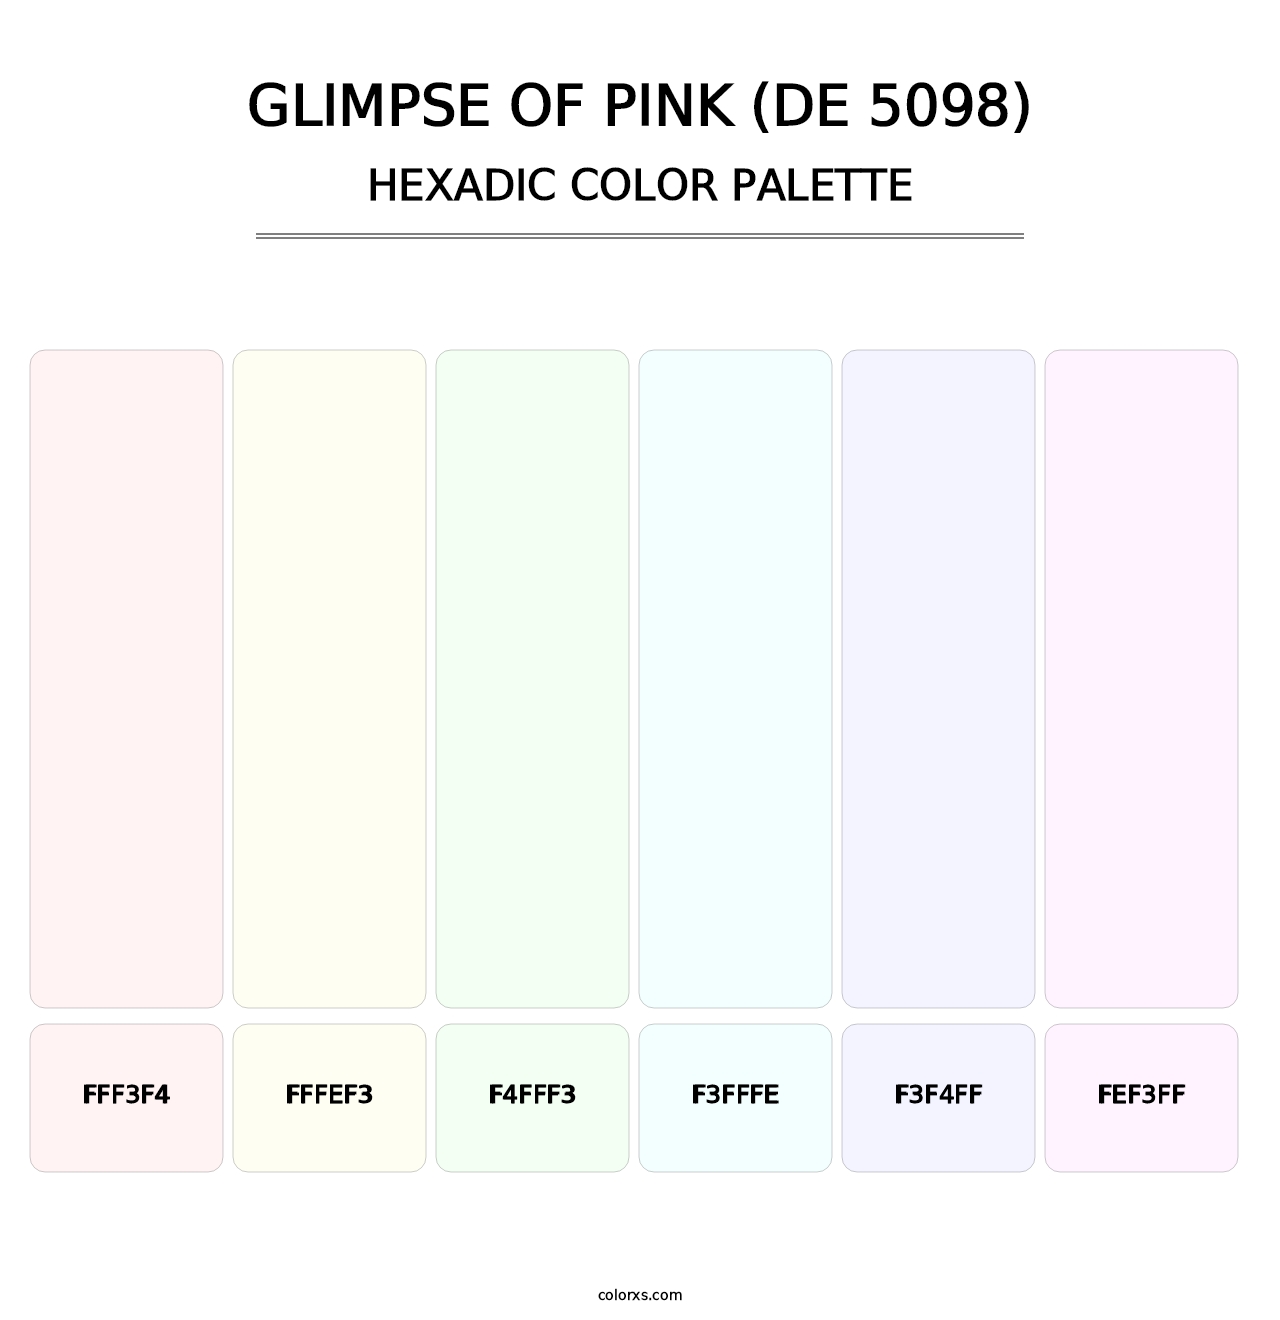 Glimpse of Pink (DE 5098) - Hexadic Color Palette